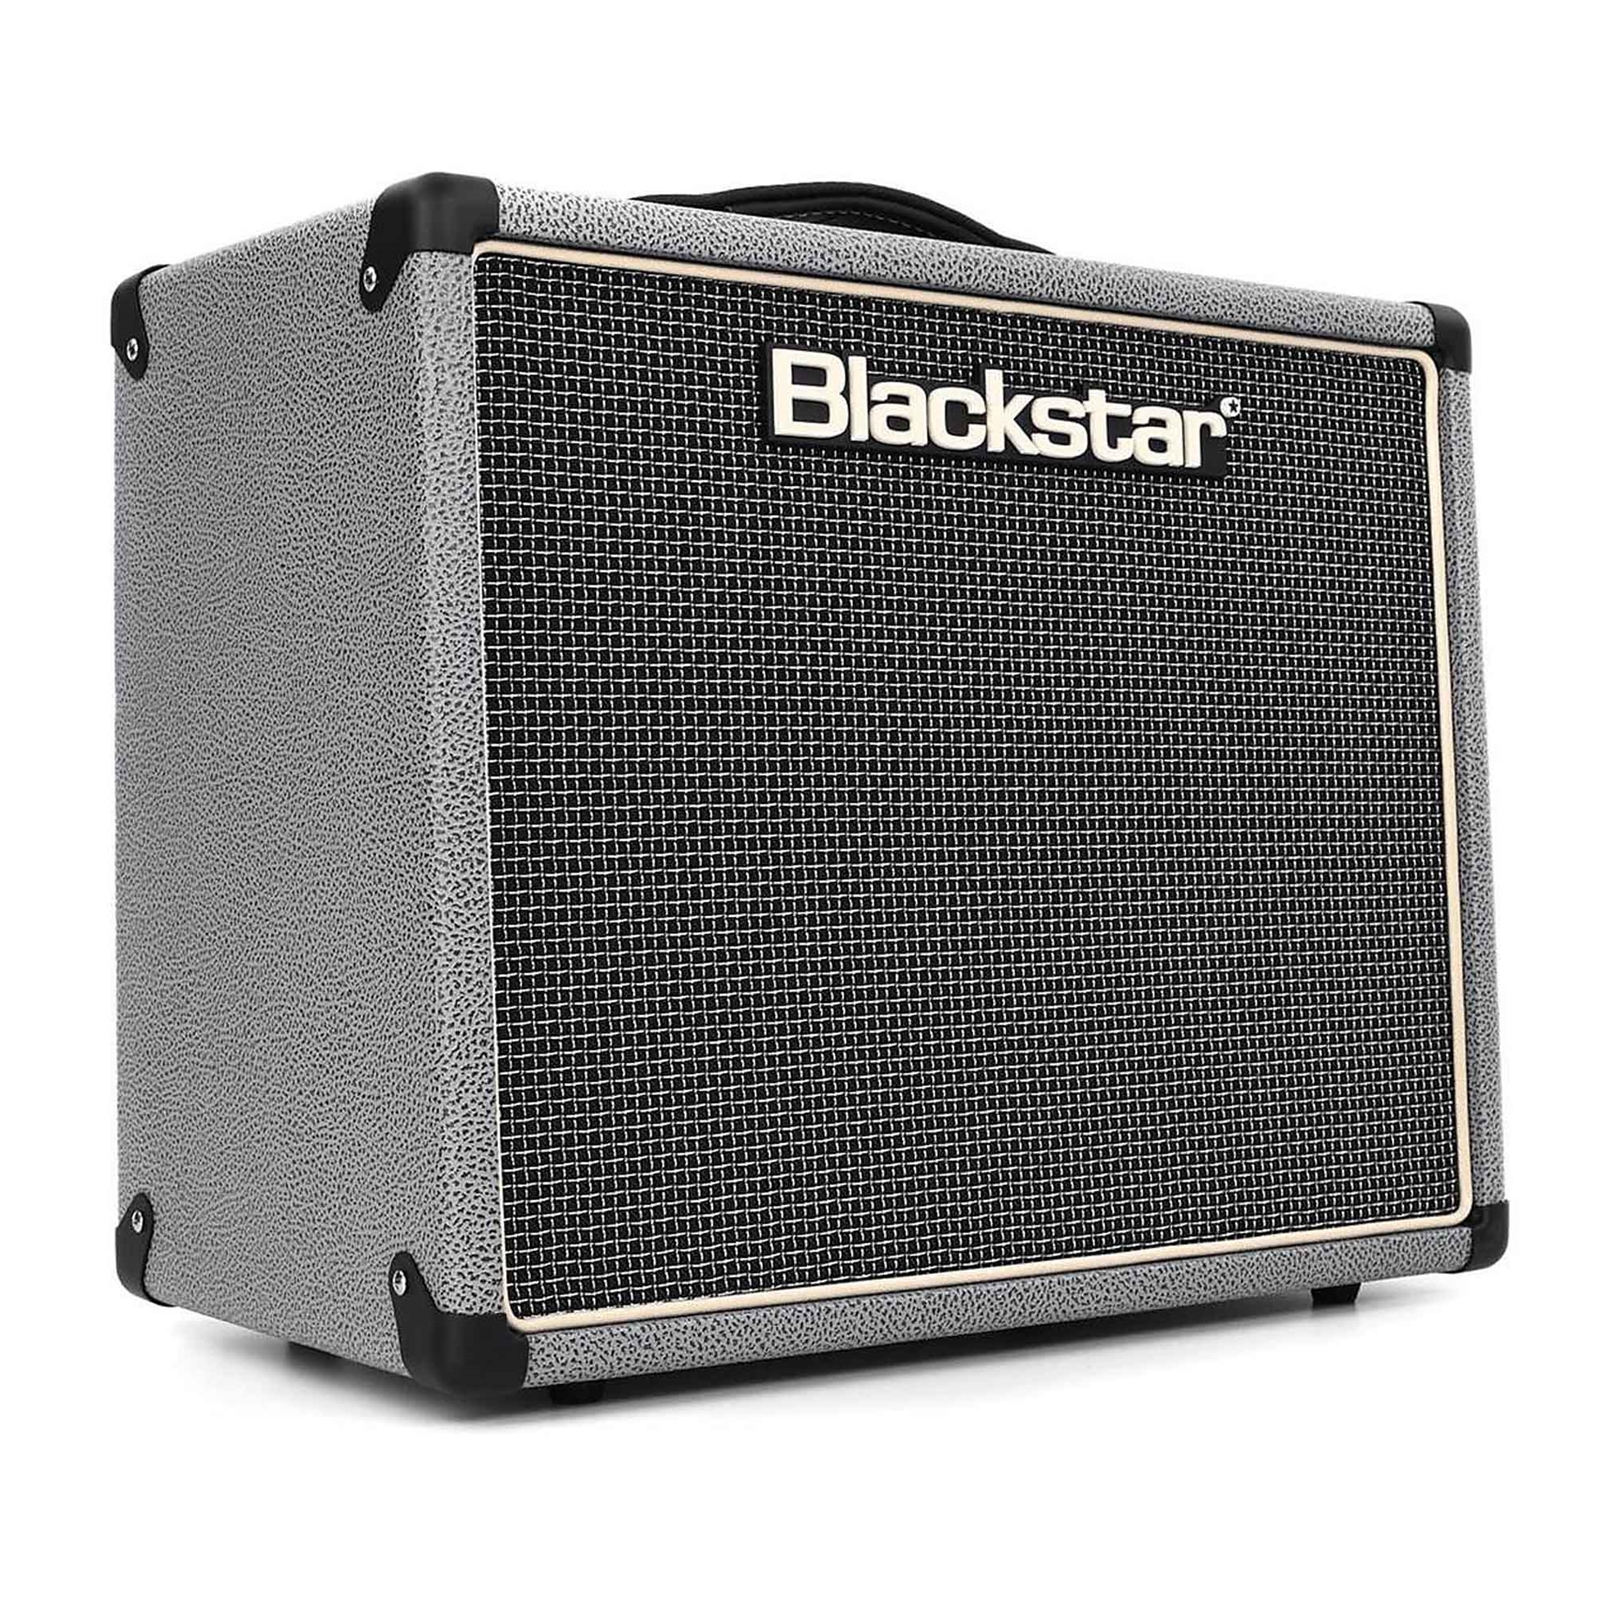 Blackstar HT5R MkII Guitar Amplifier - Bronco Grey Edition